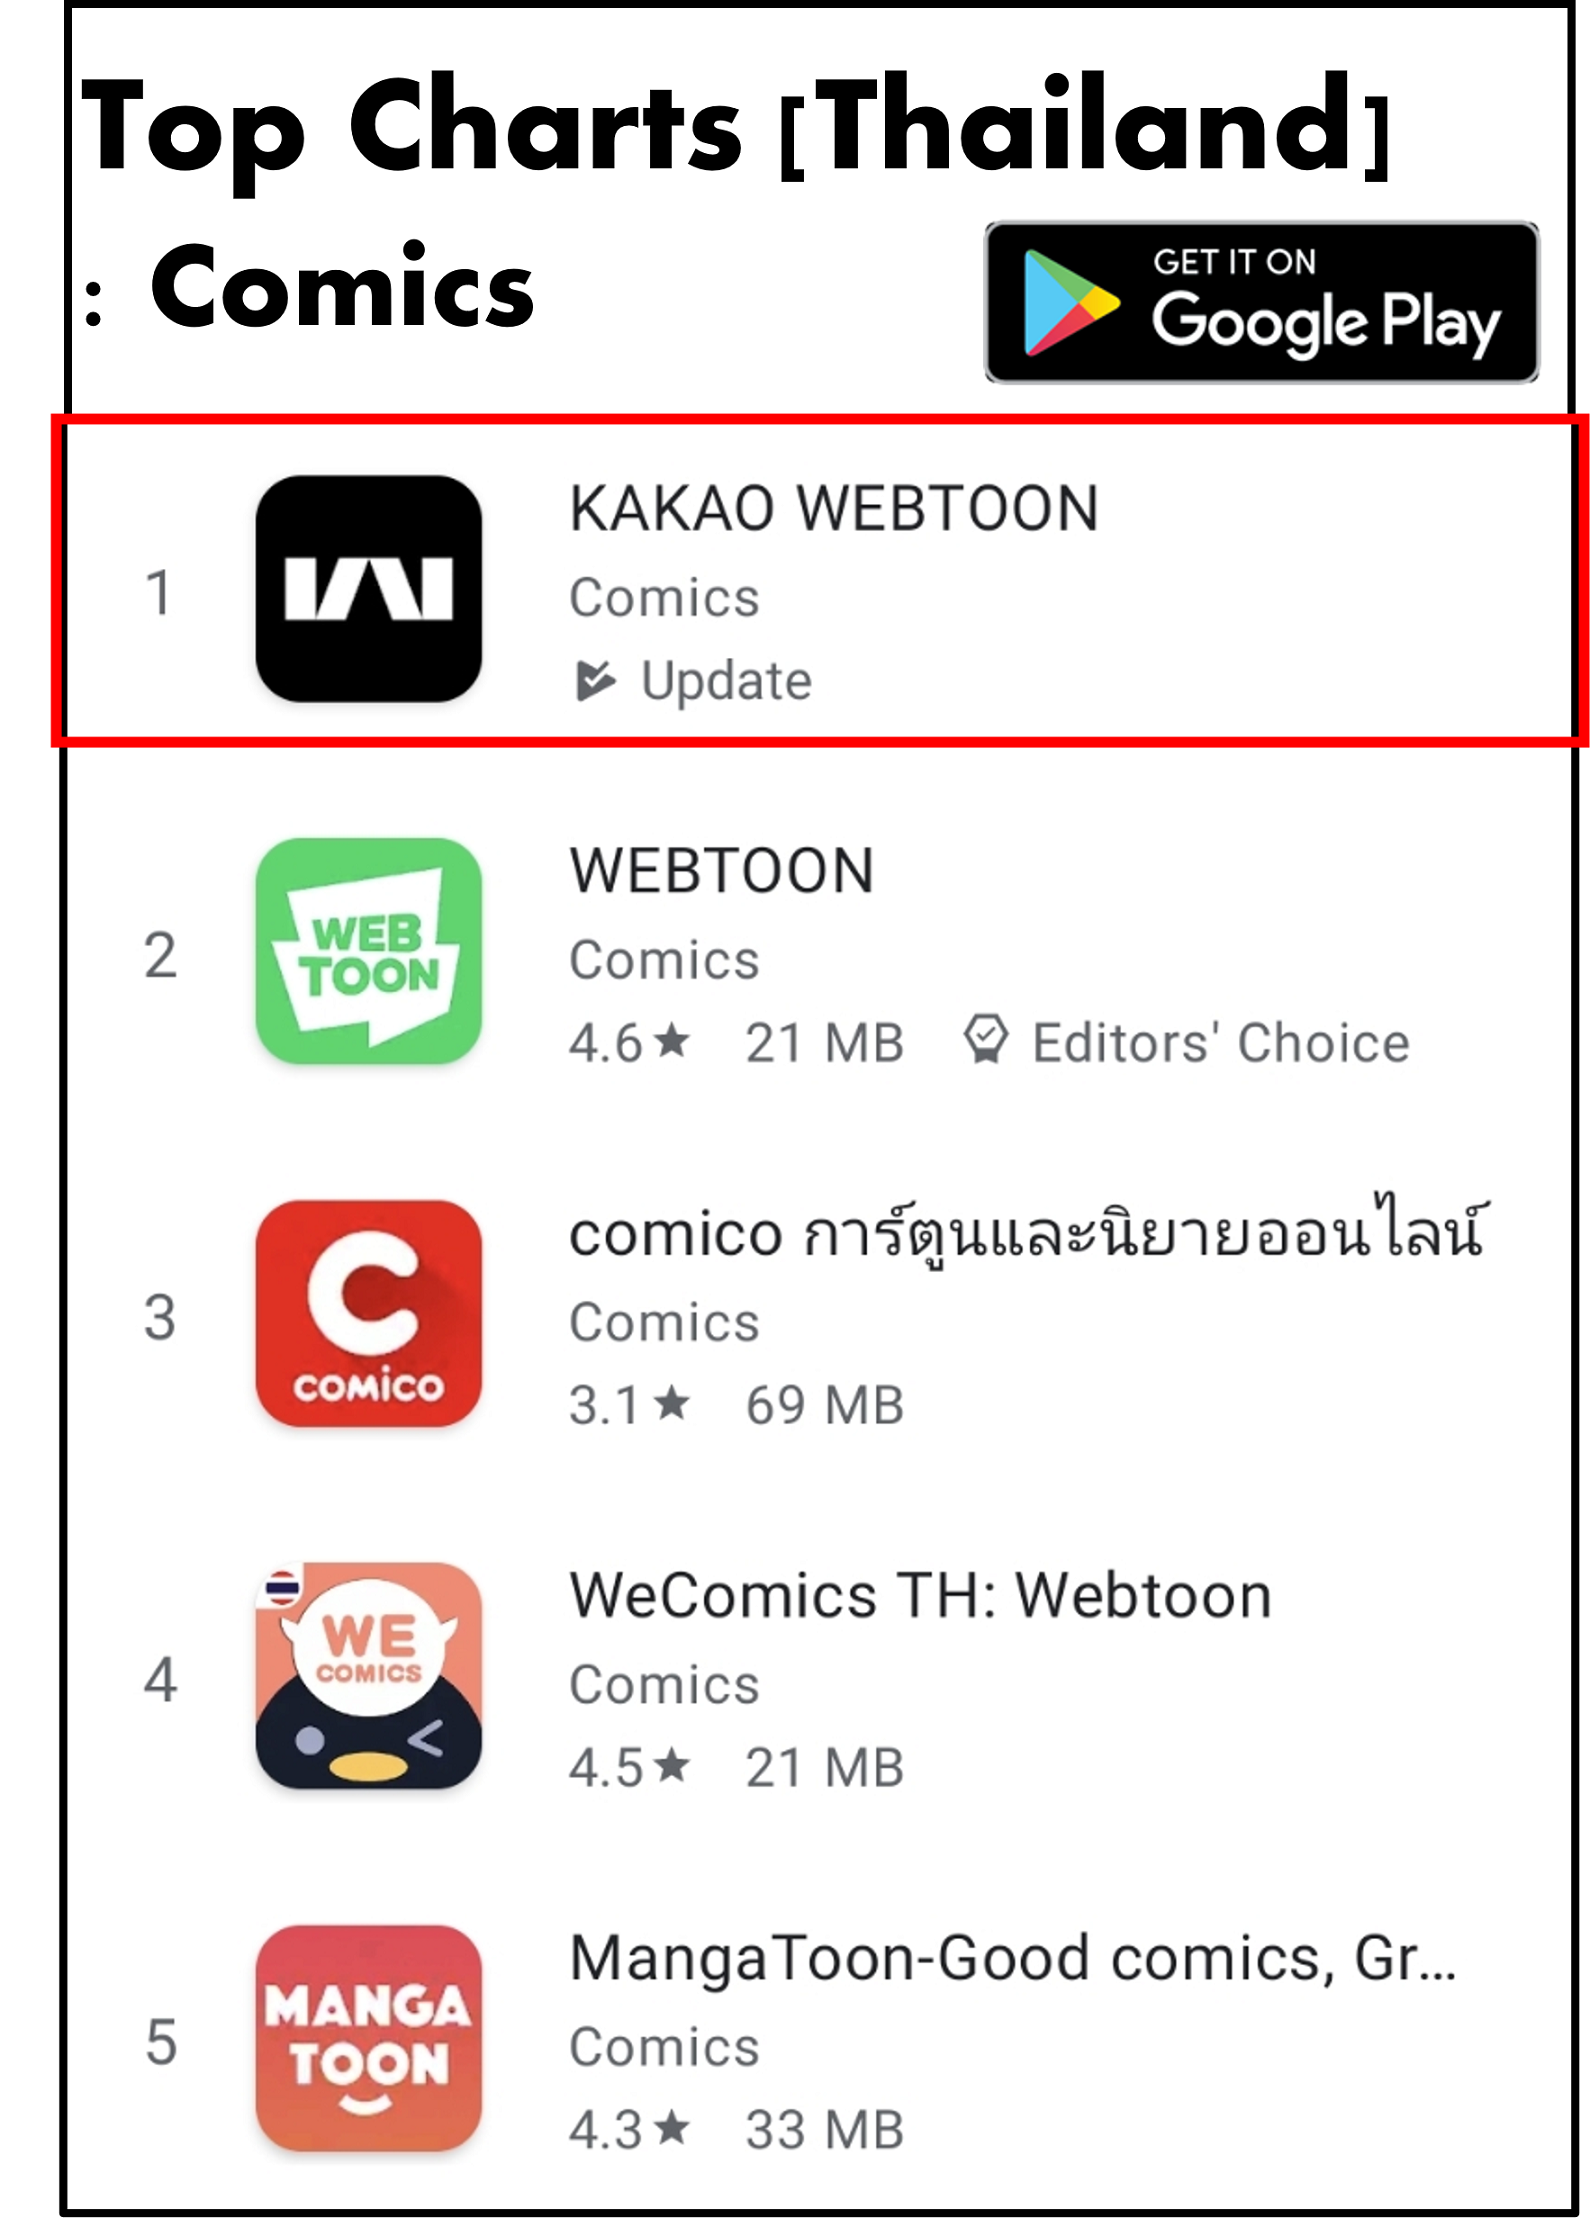 Kakao webtoon Top 1 in Comics at Play store | kakao webtoon | เปิดตัวแอปพลิเคชัน “คาเคา เว็บตูน” ที่แรกในไทย พร้อมเสิร์ฟสุดยอด ออริจินัล สตอรี่ ชื่อดังมากมาย